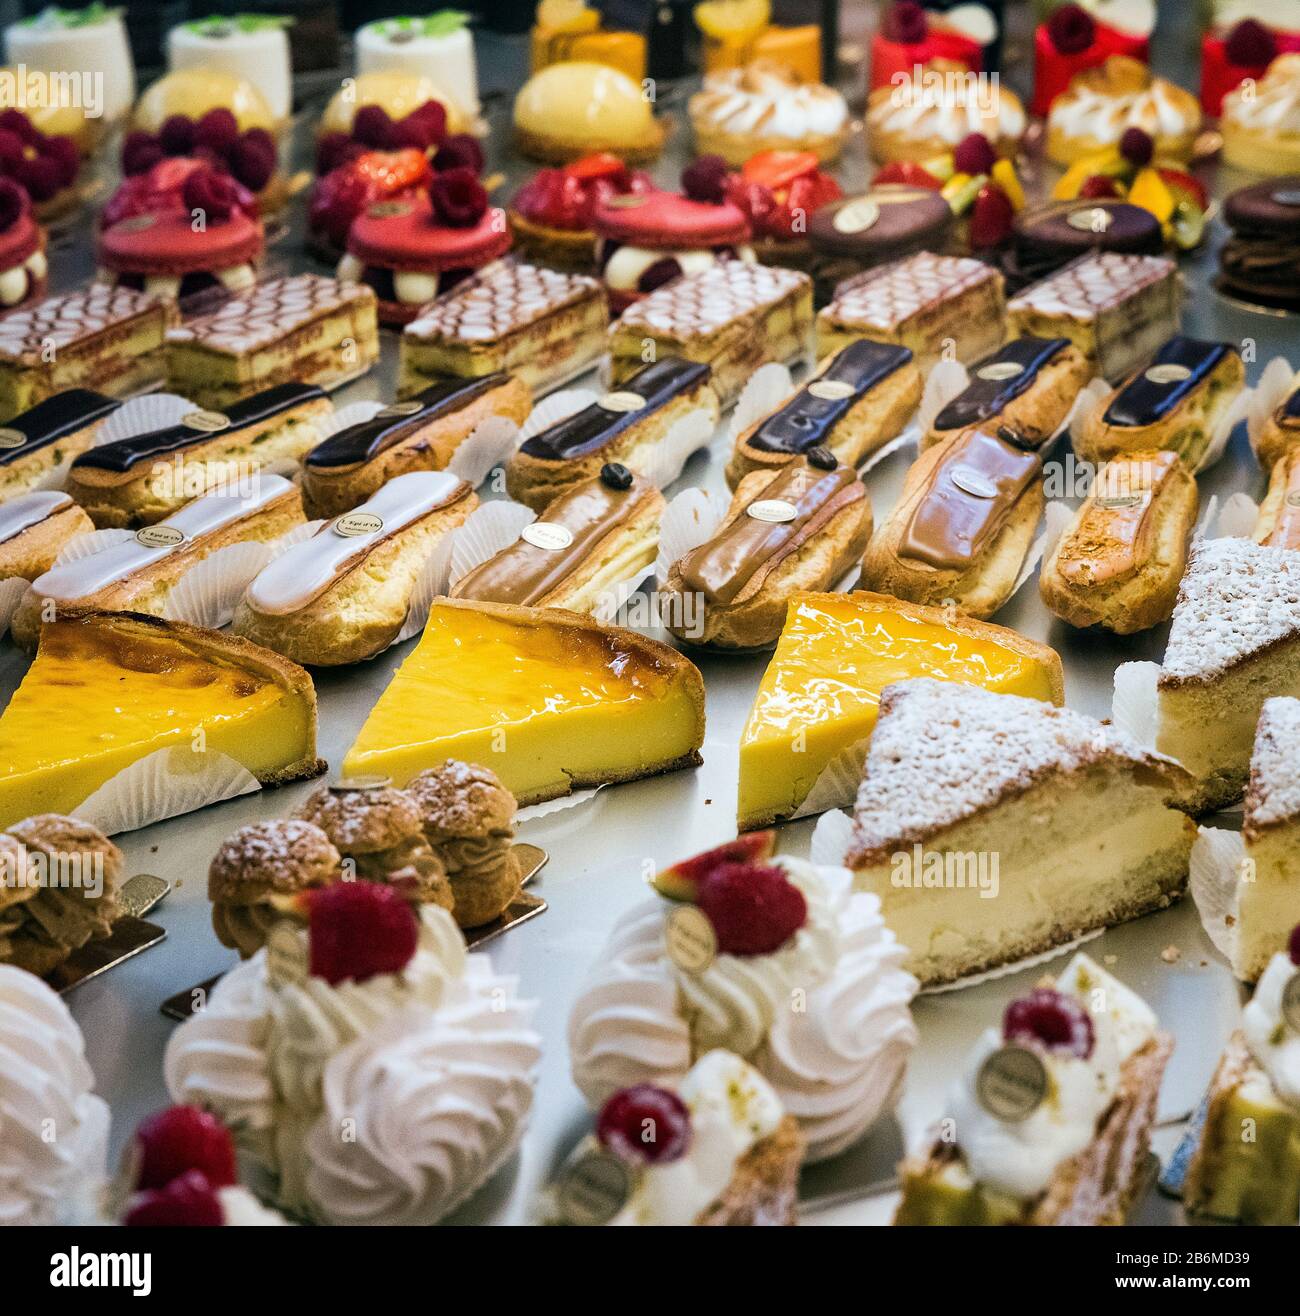 Dulces que se exhiben en una tienda de pasterio francés. Foto de stock